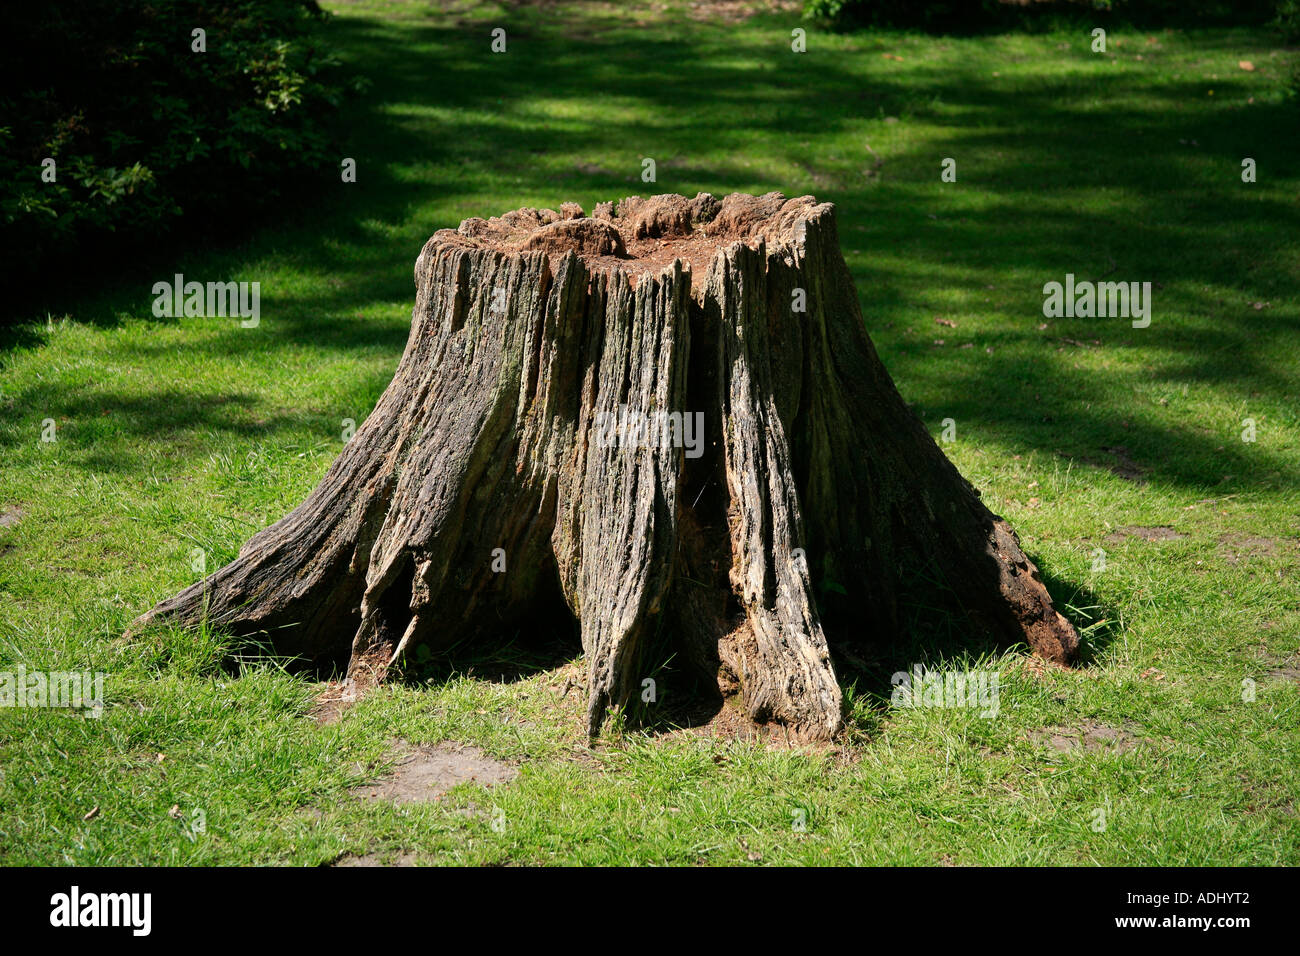 Broken off stump of an old tree Stock Photo